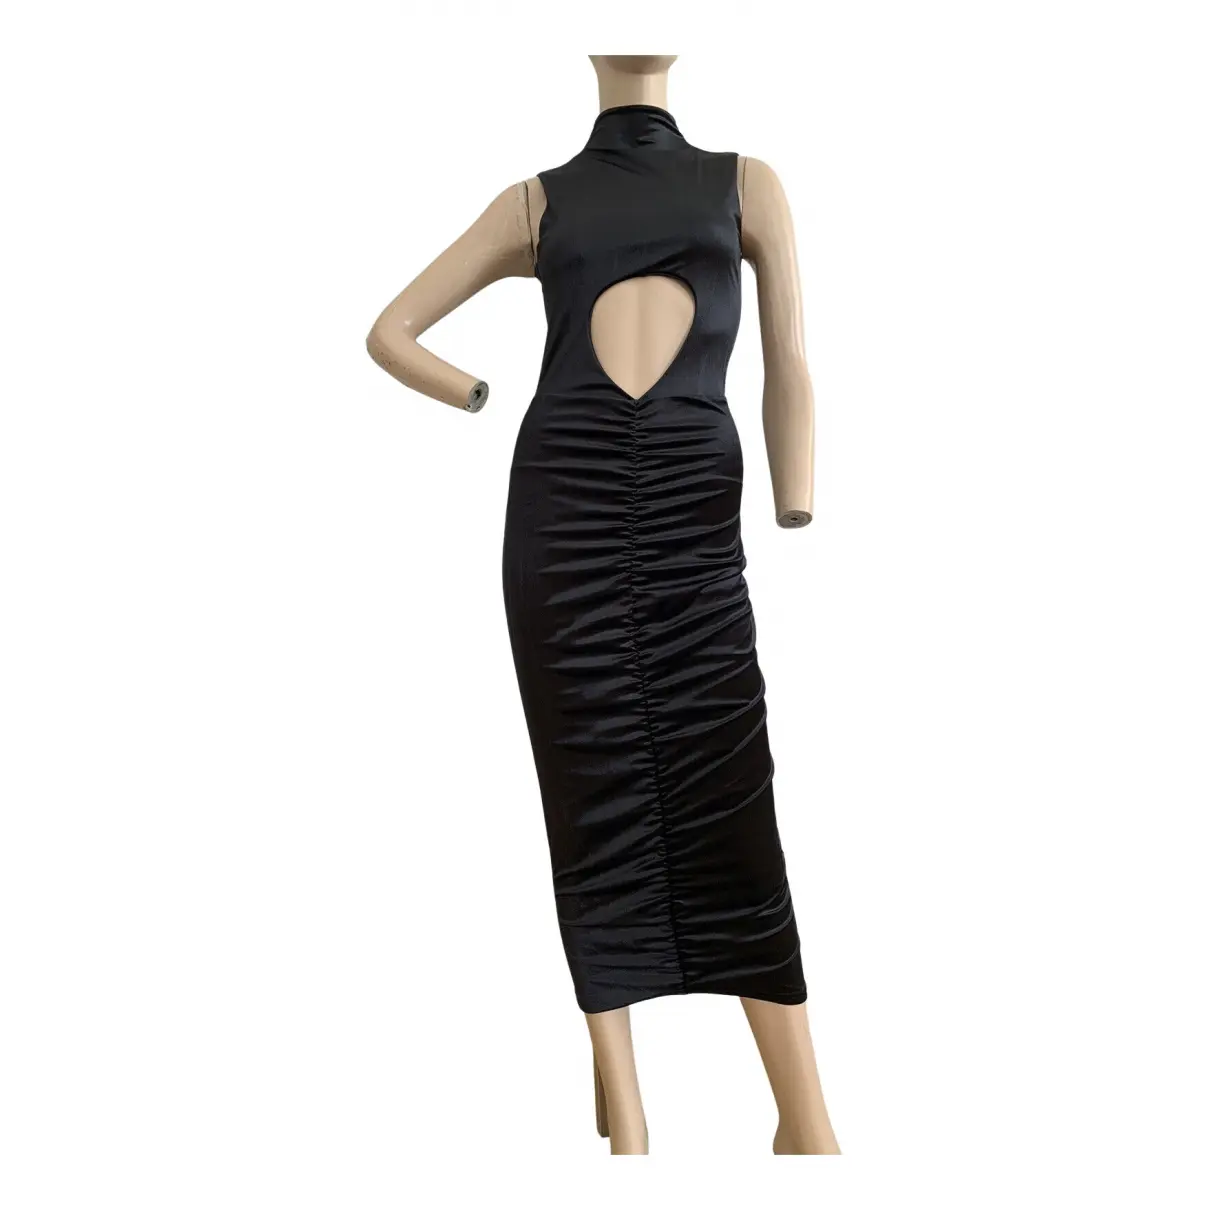 Velvet mid-length dress Farai London